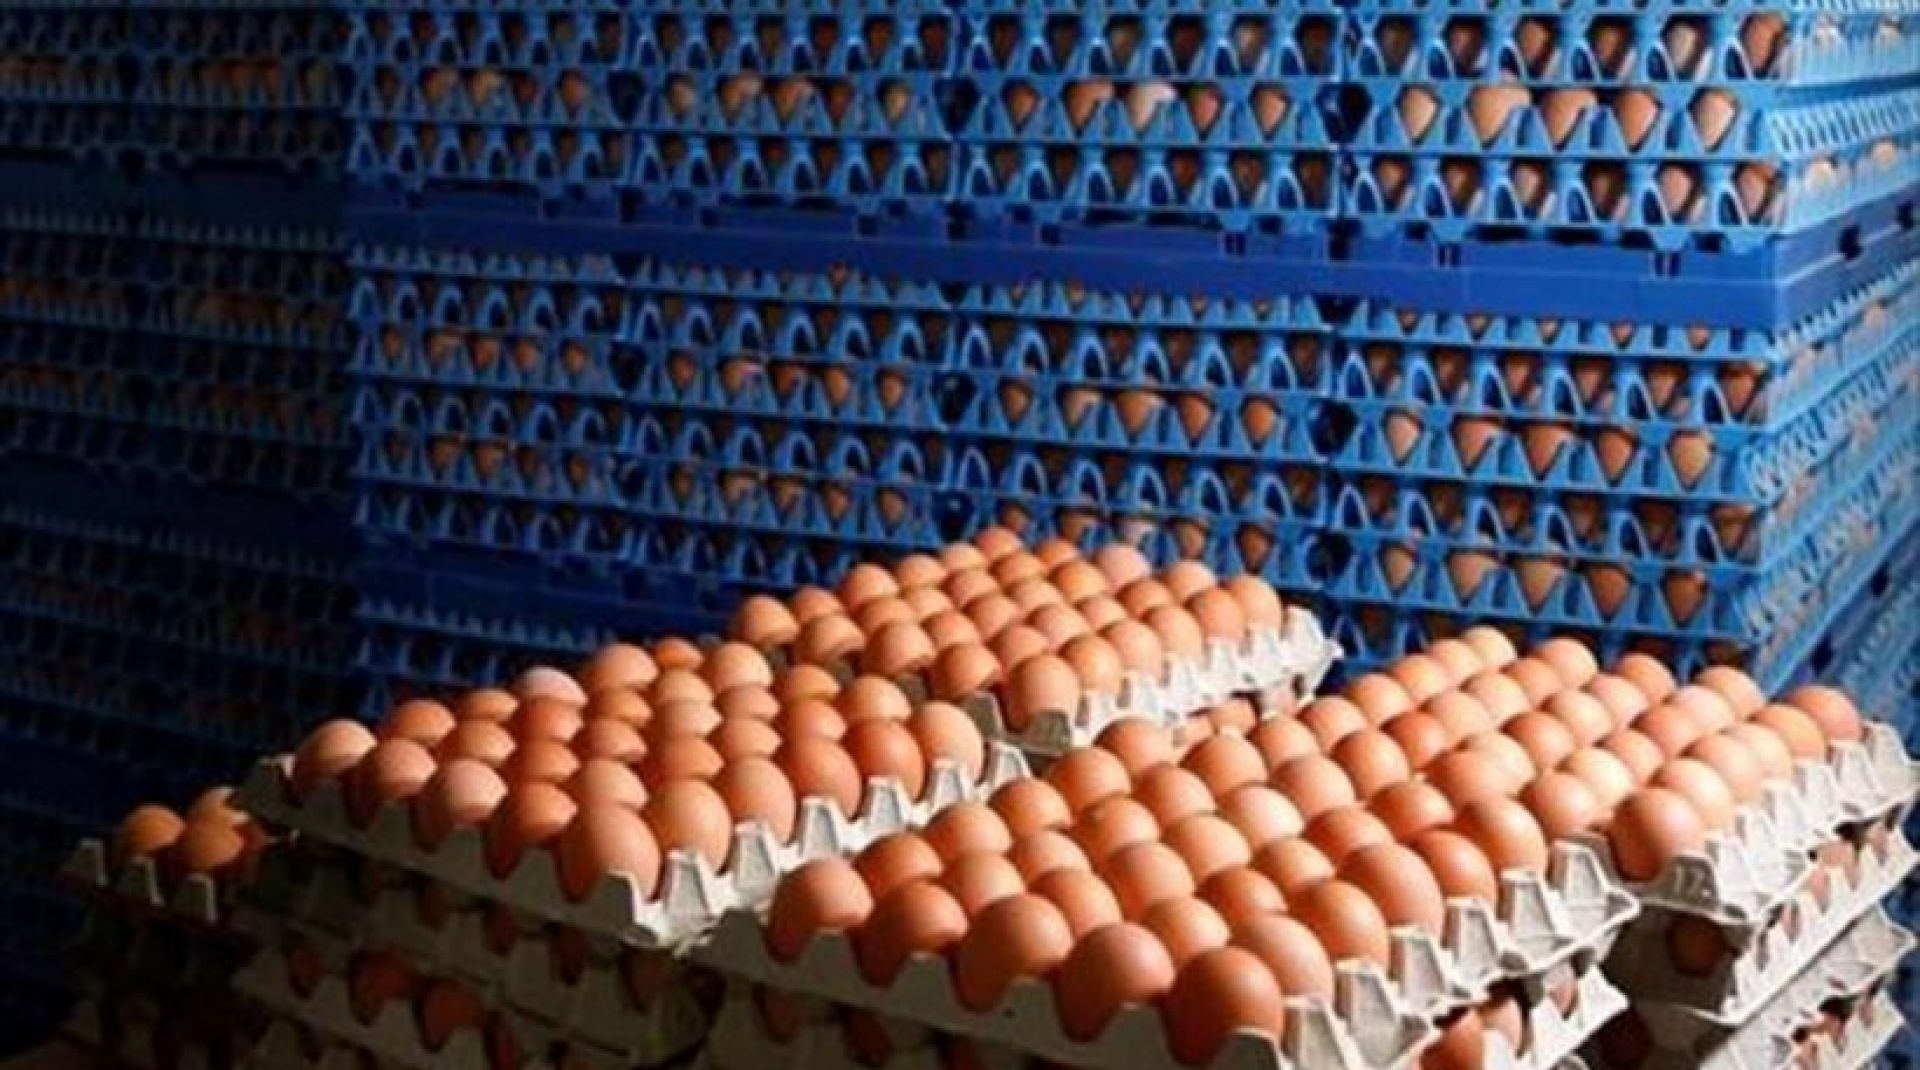 Το σκάνδαλο με τα μολυσμένα αυγά έπληξε και το Λουξεμβούργο